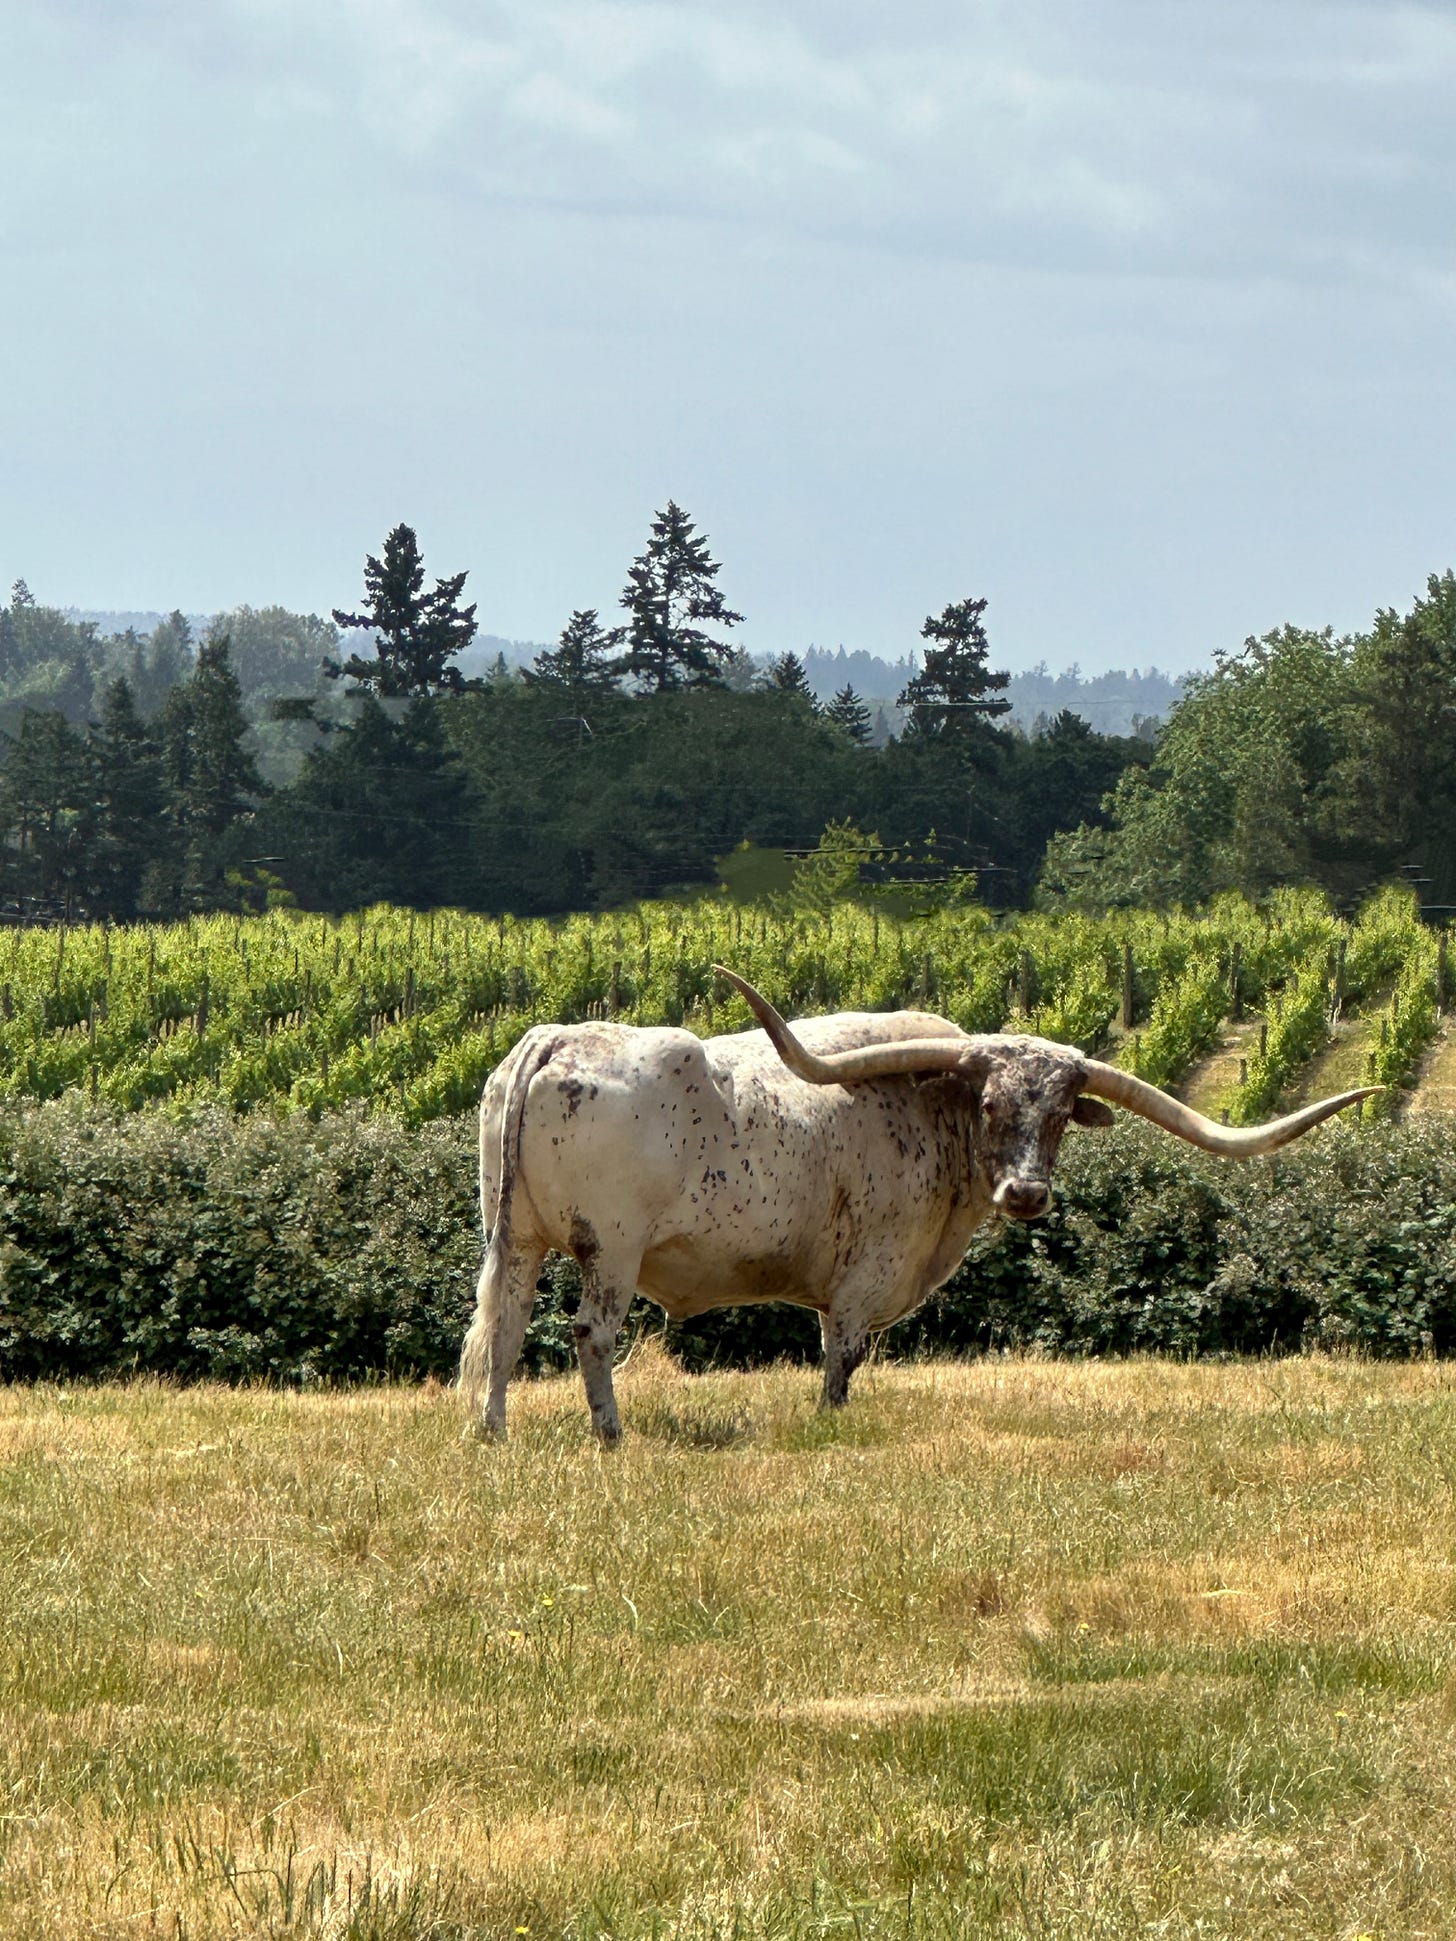 Longhorn steer in pasture near vineyard